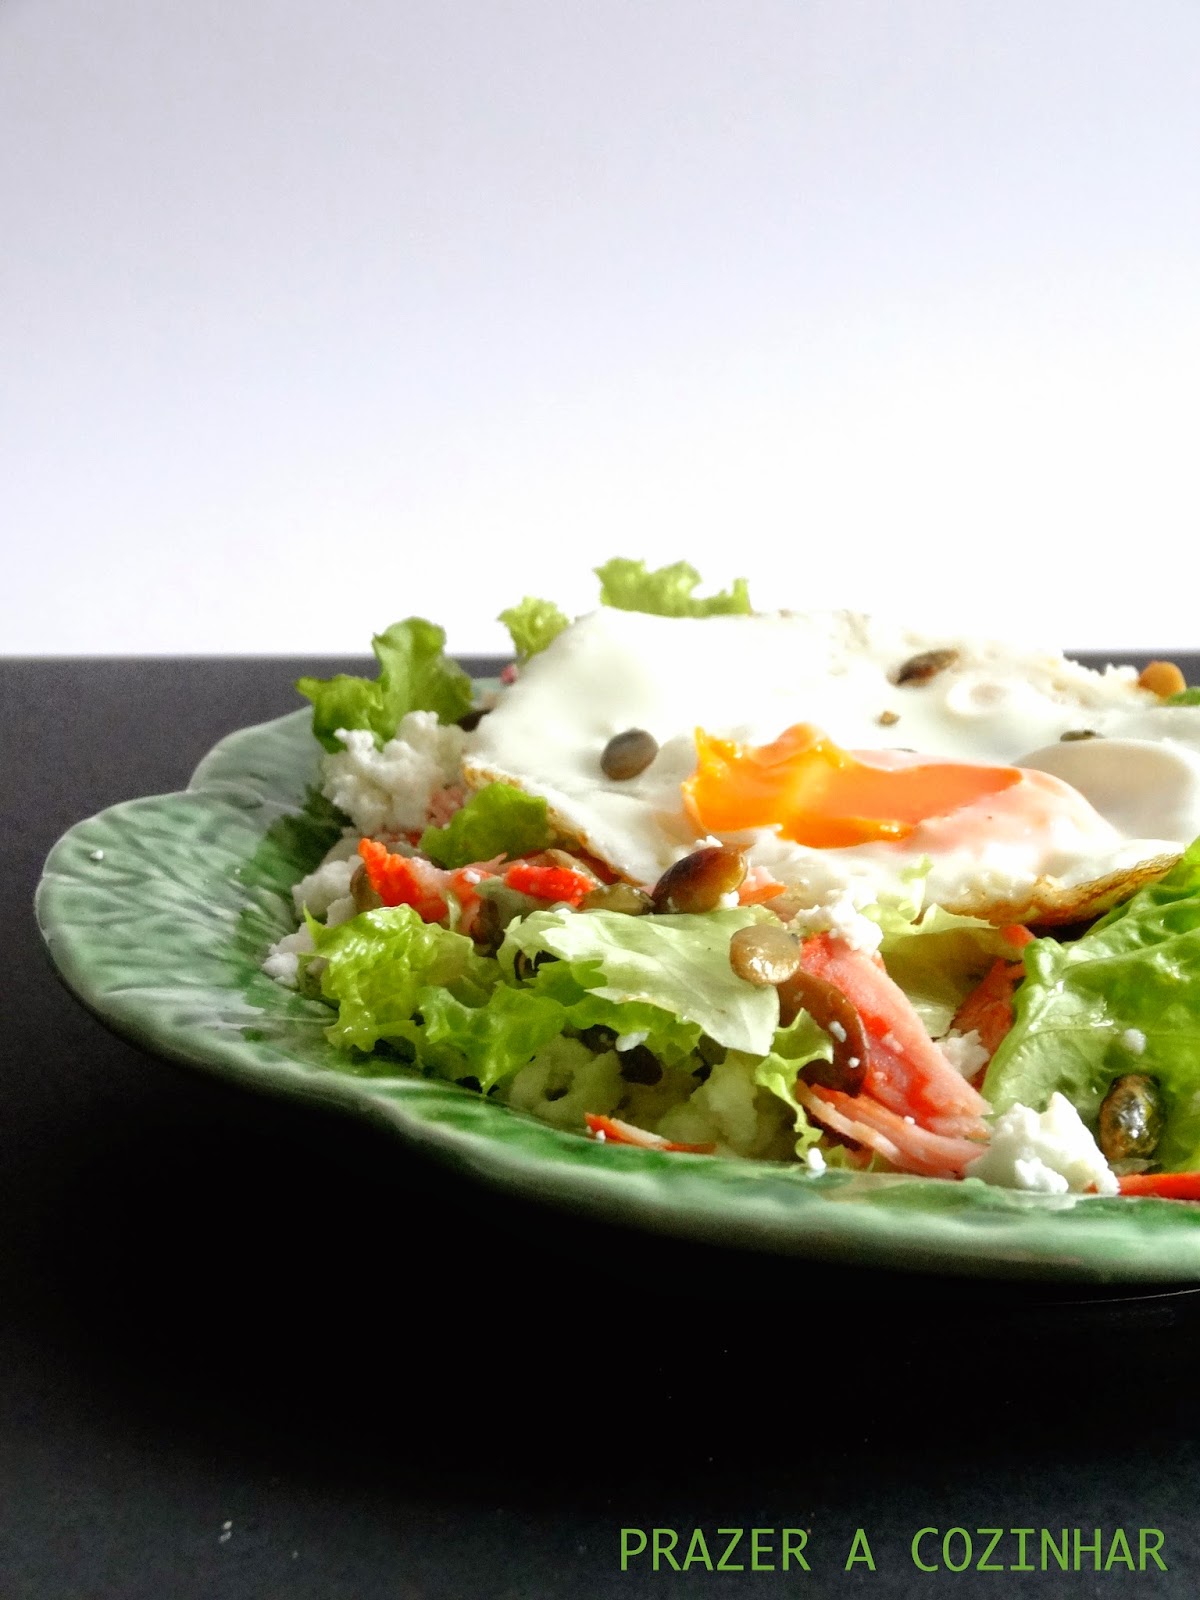 prazer a cozinhar - Salada de paio, requeijão, sementes de abóbora e ovo